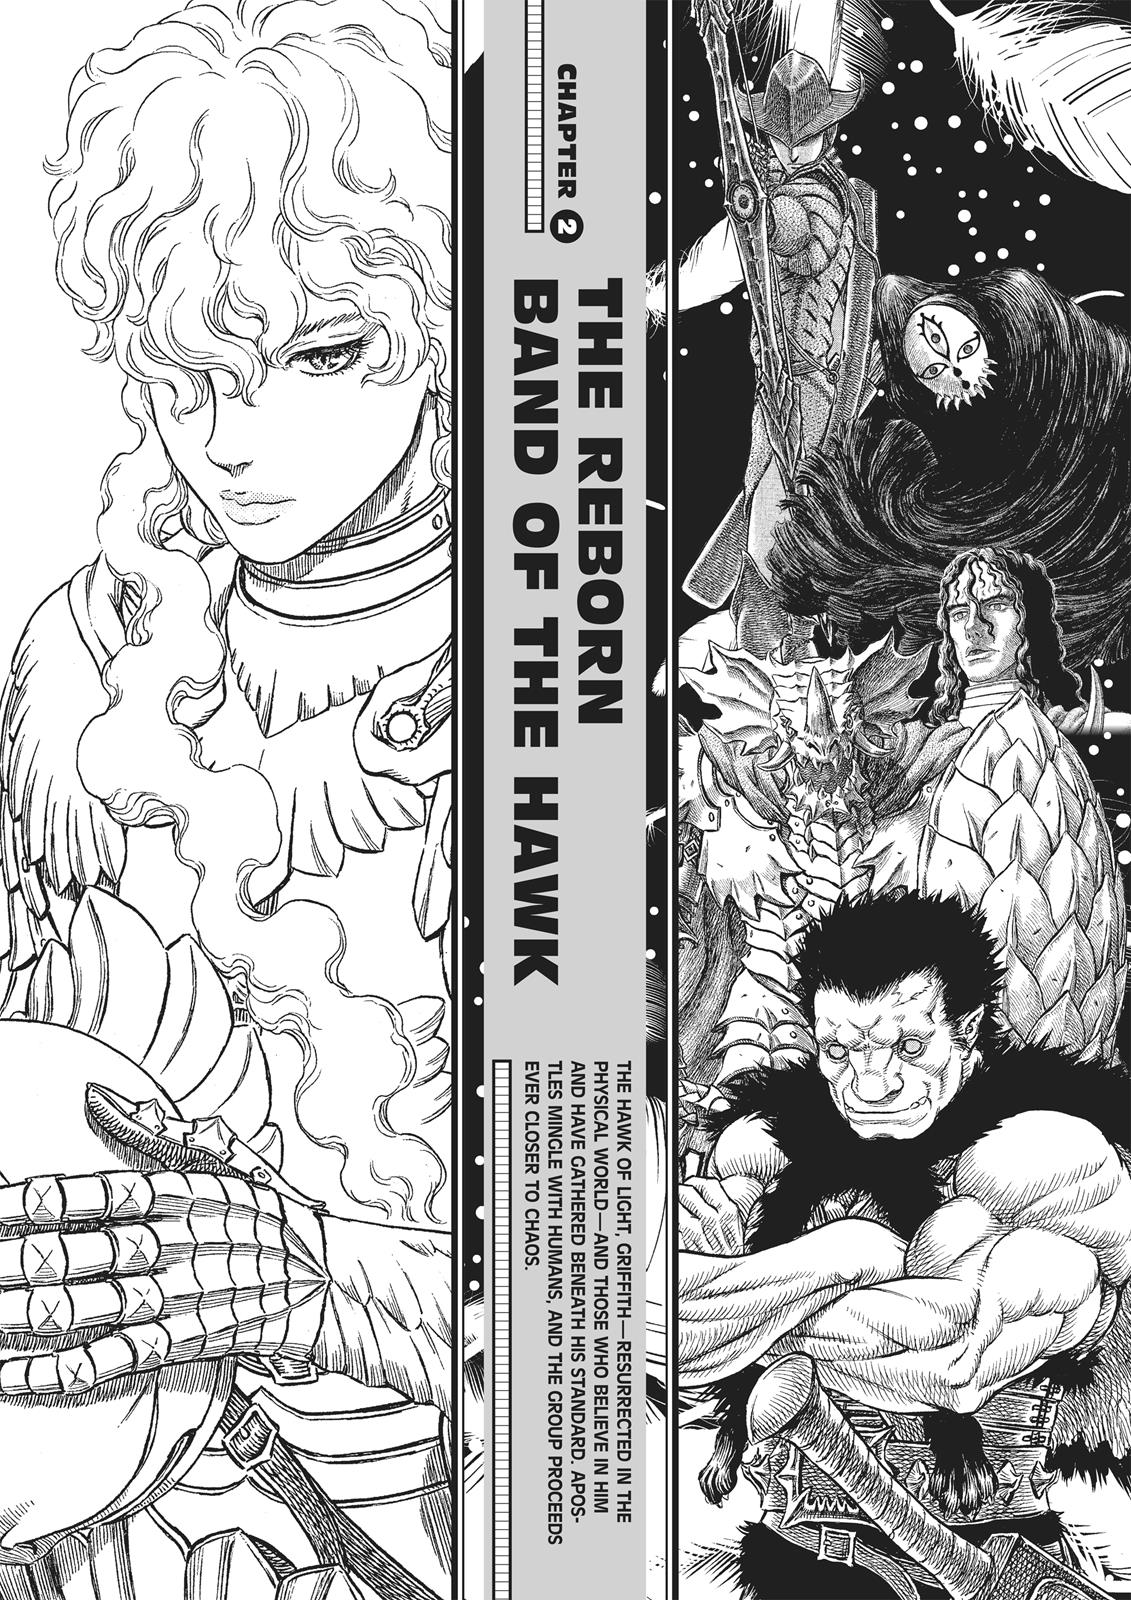 Berserk Manga Chapter 350.5 image 054